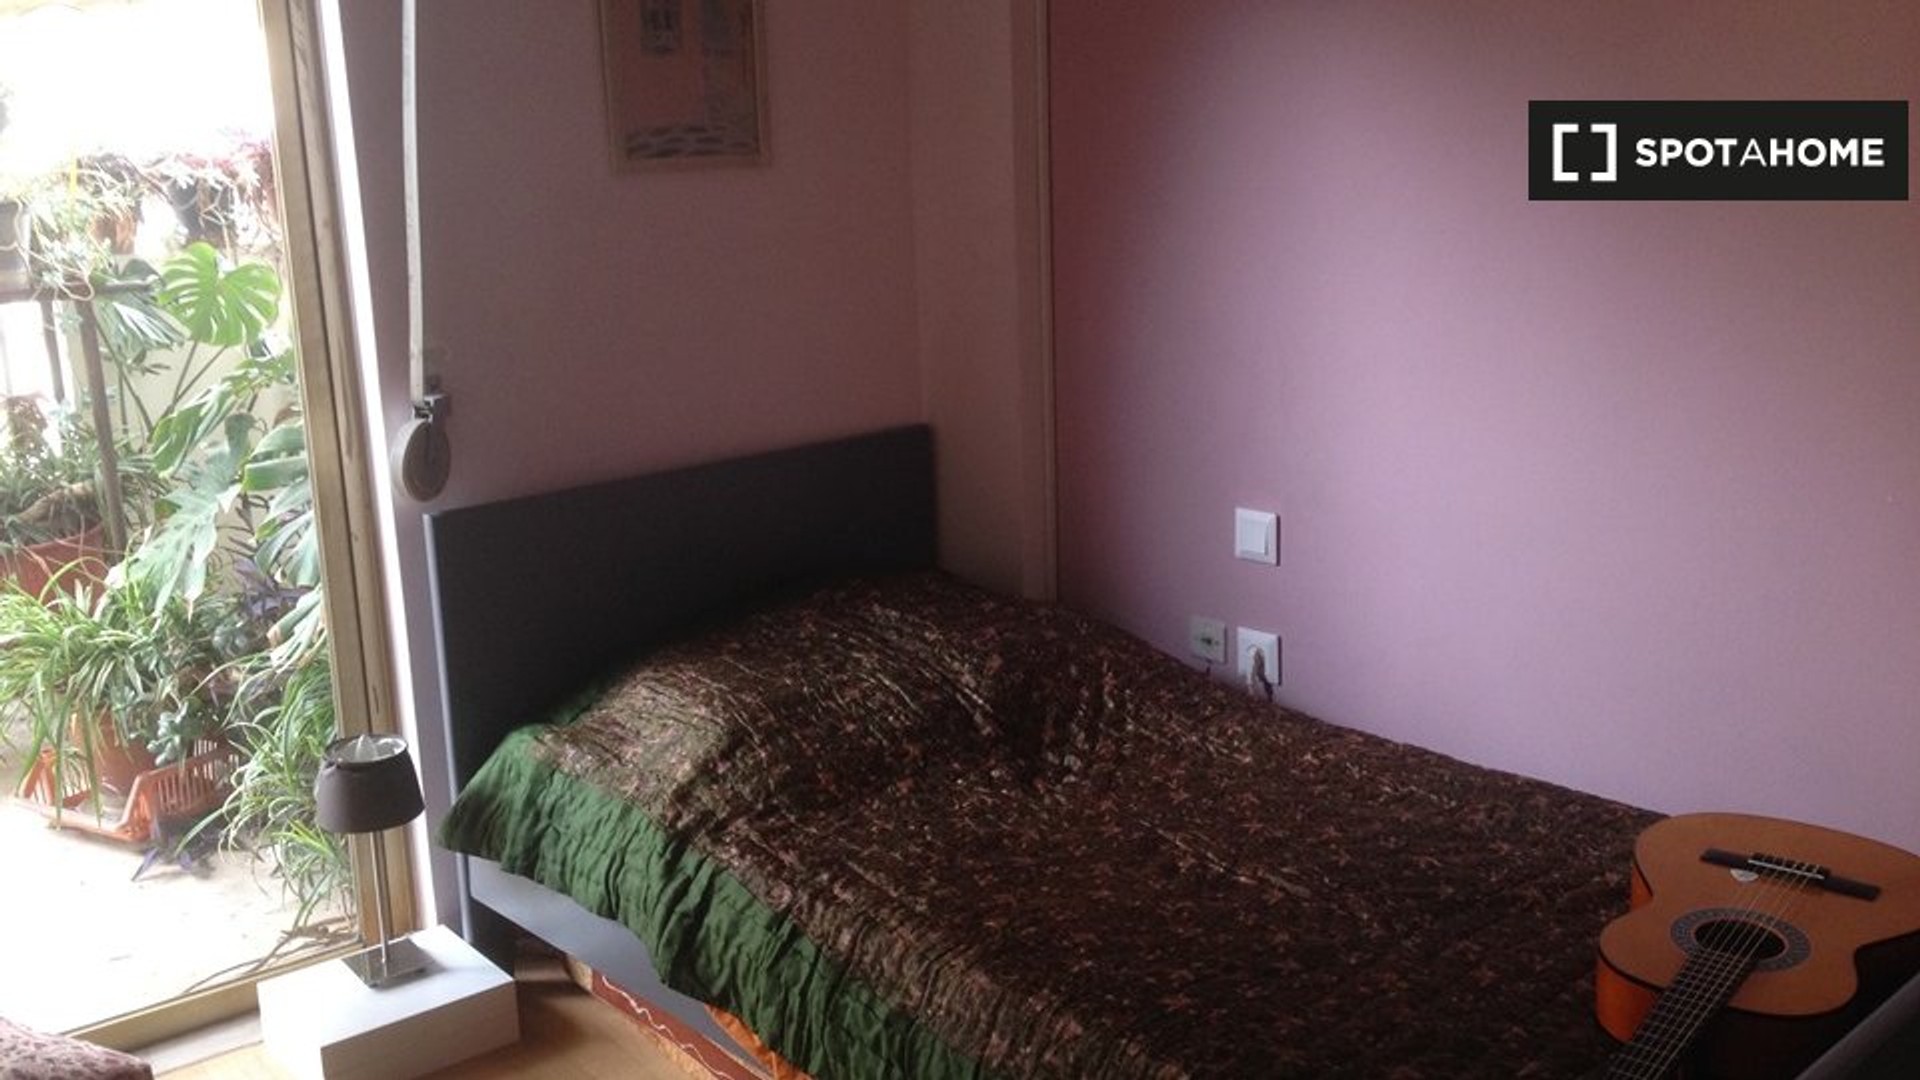 Athens de çift kişilik yataklı kiralık oda